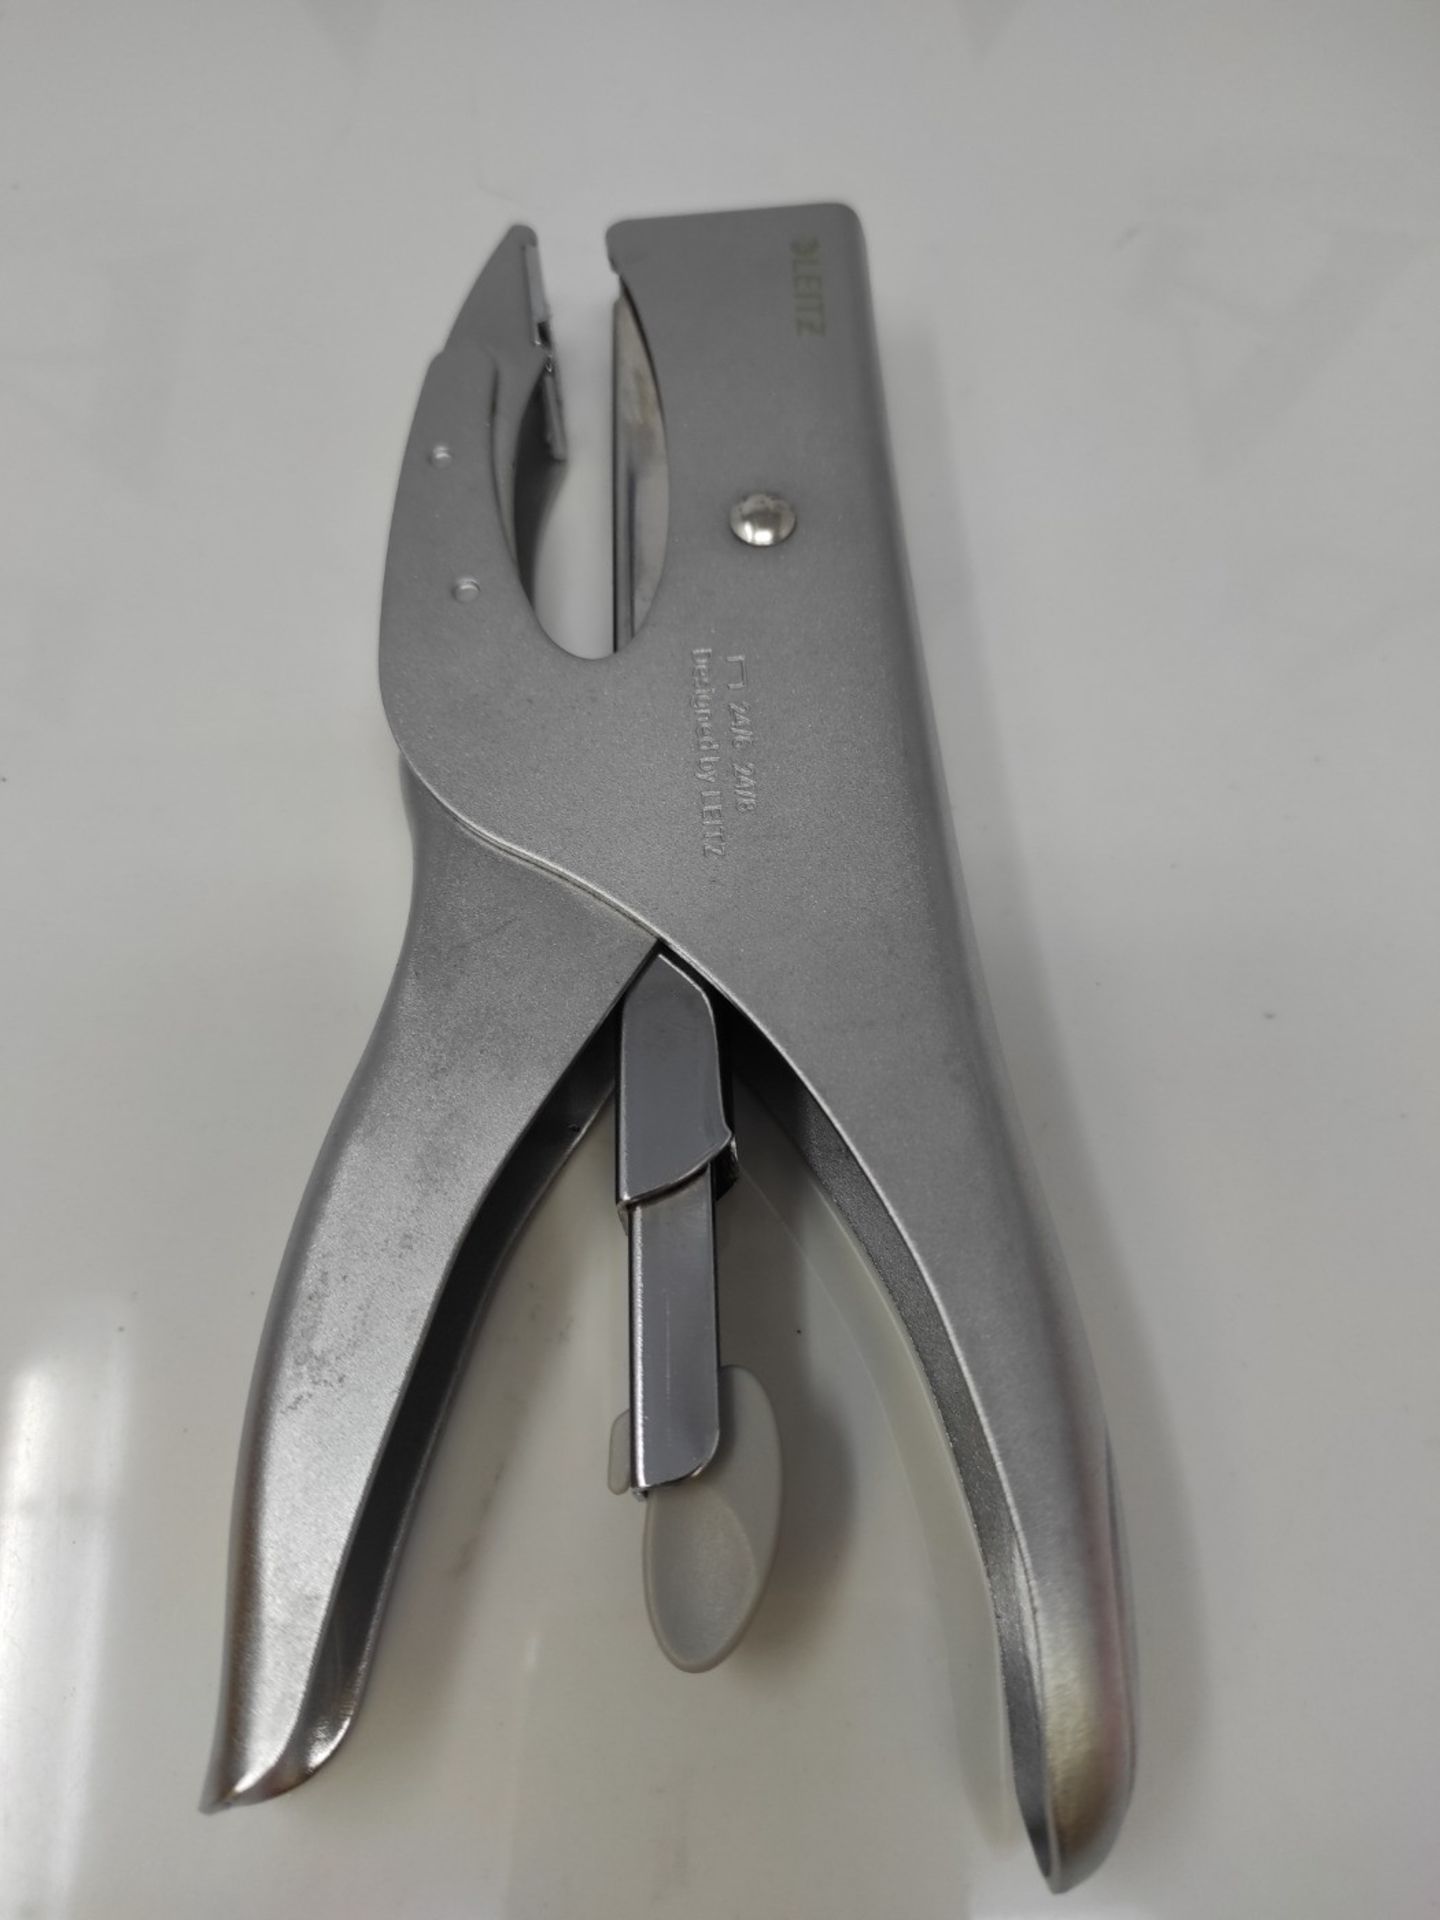 Leitz stapler, For 40 sheets, Ergonomic design made of metal, Rear loading mechanism, - Image 3 of 3